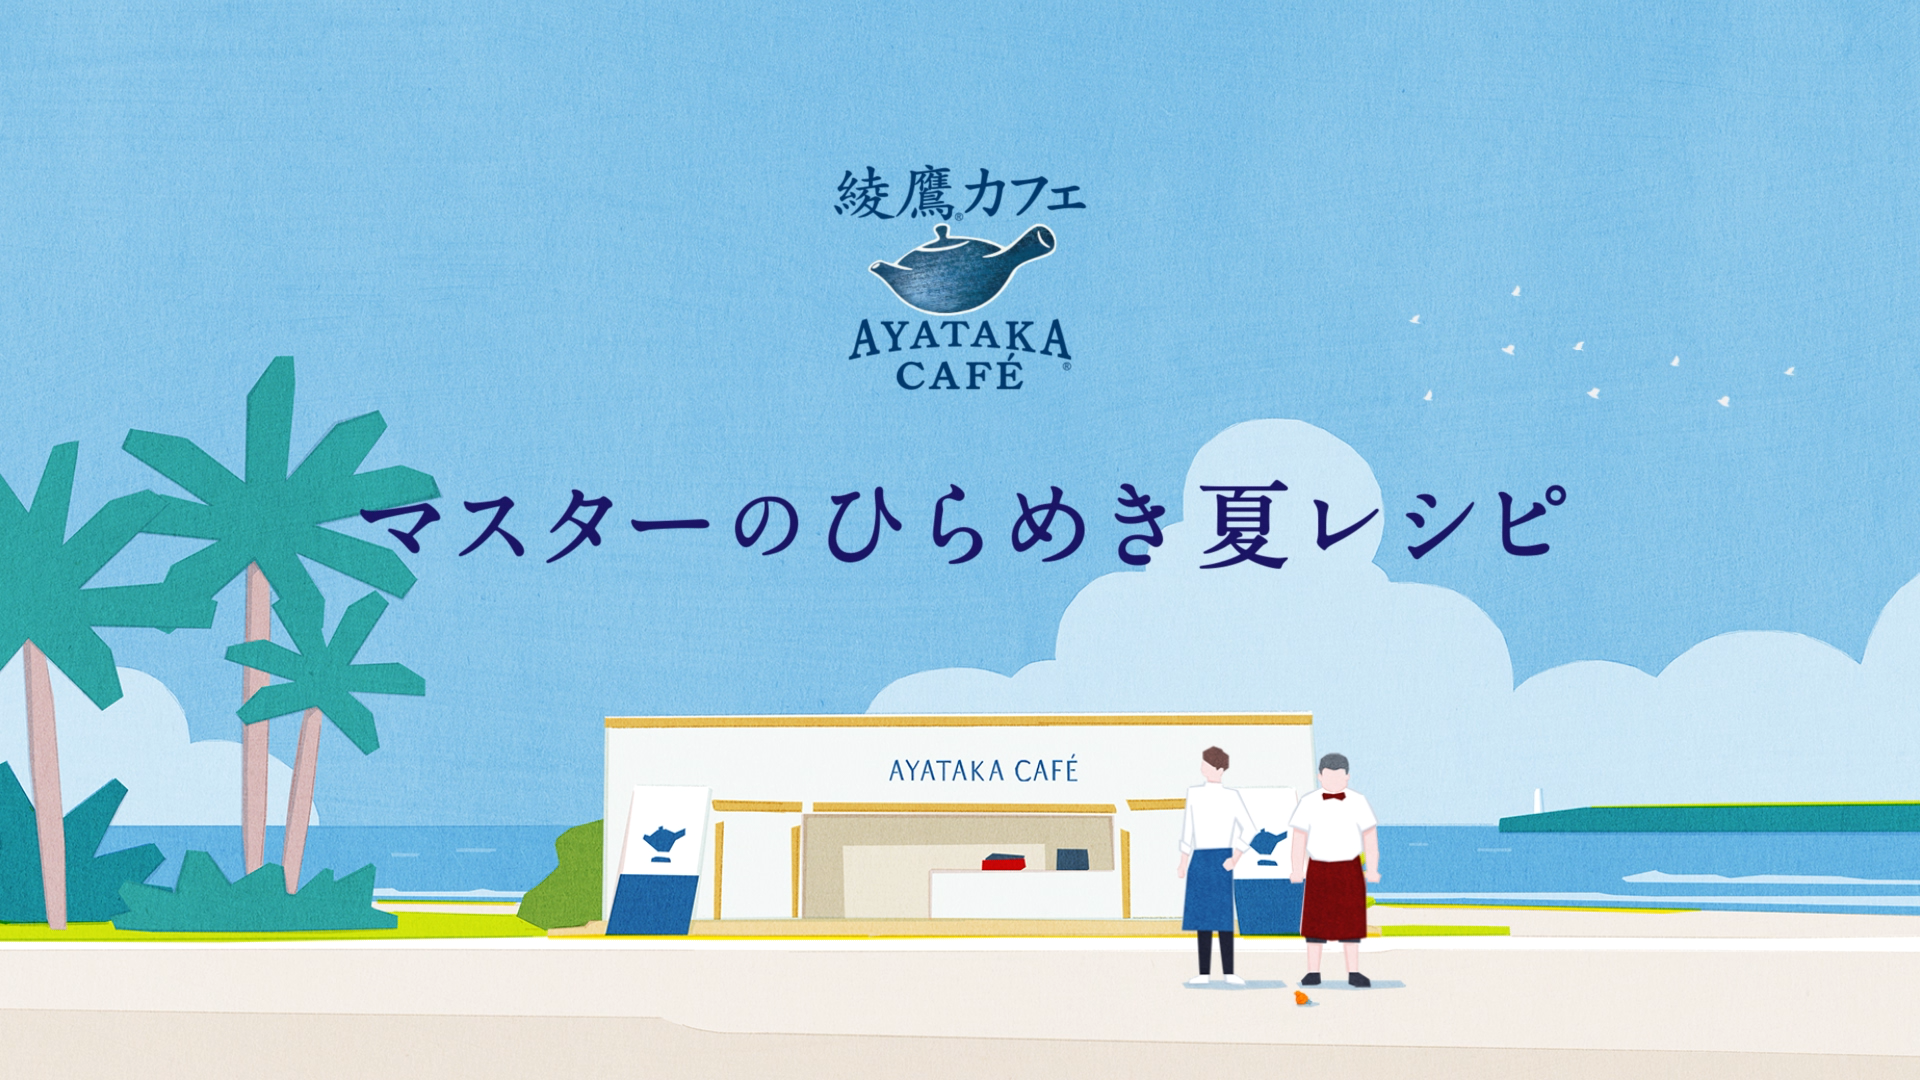 Ayataka Cafe Matcha Latte Float